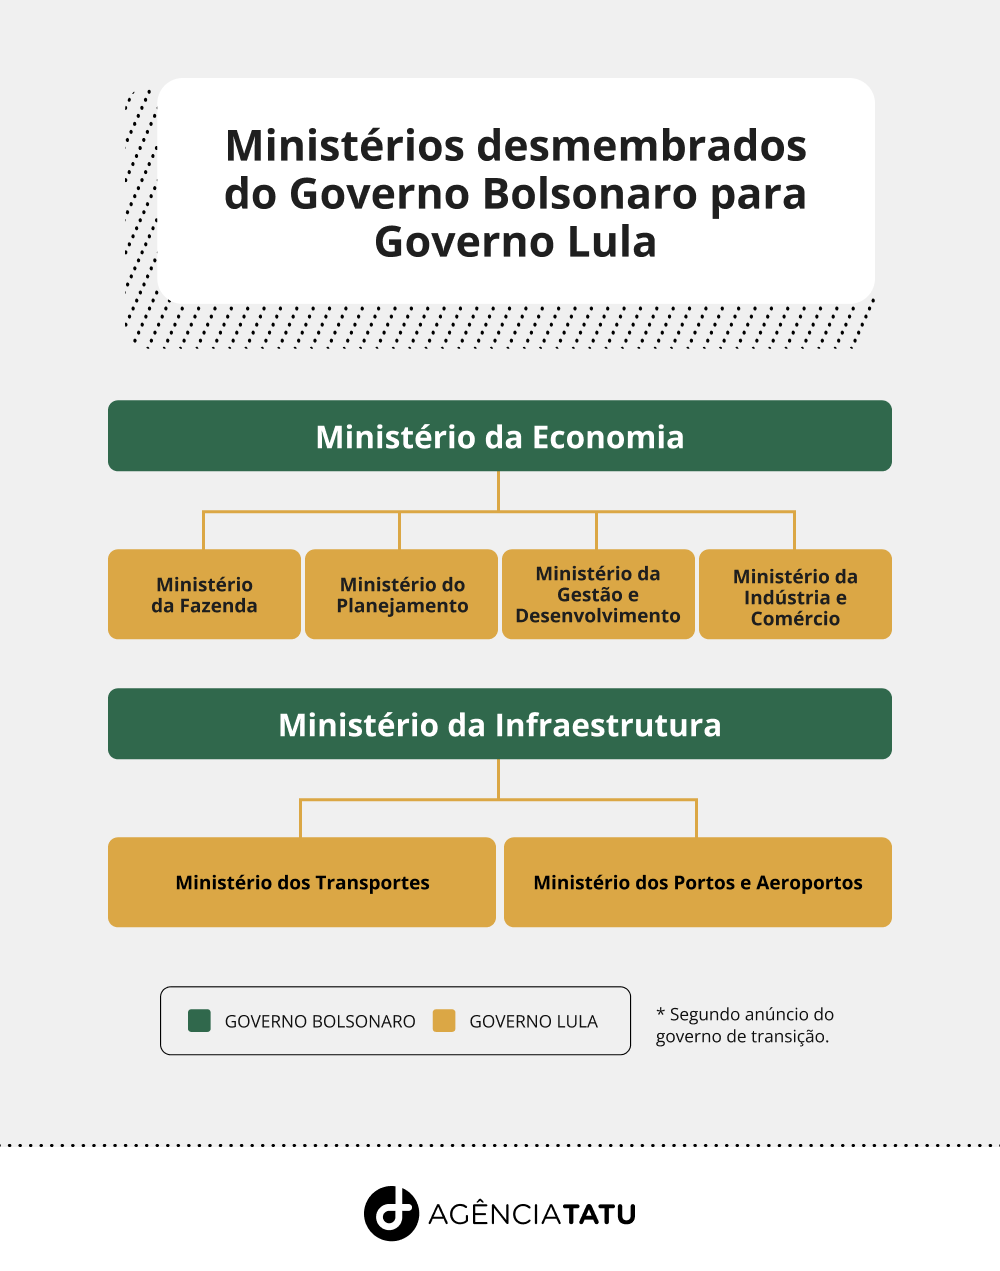 Infográfico com os ministérios que foram desmembrados do governo bolsonaro para o de Lula